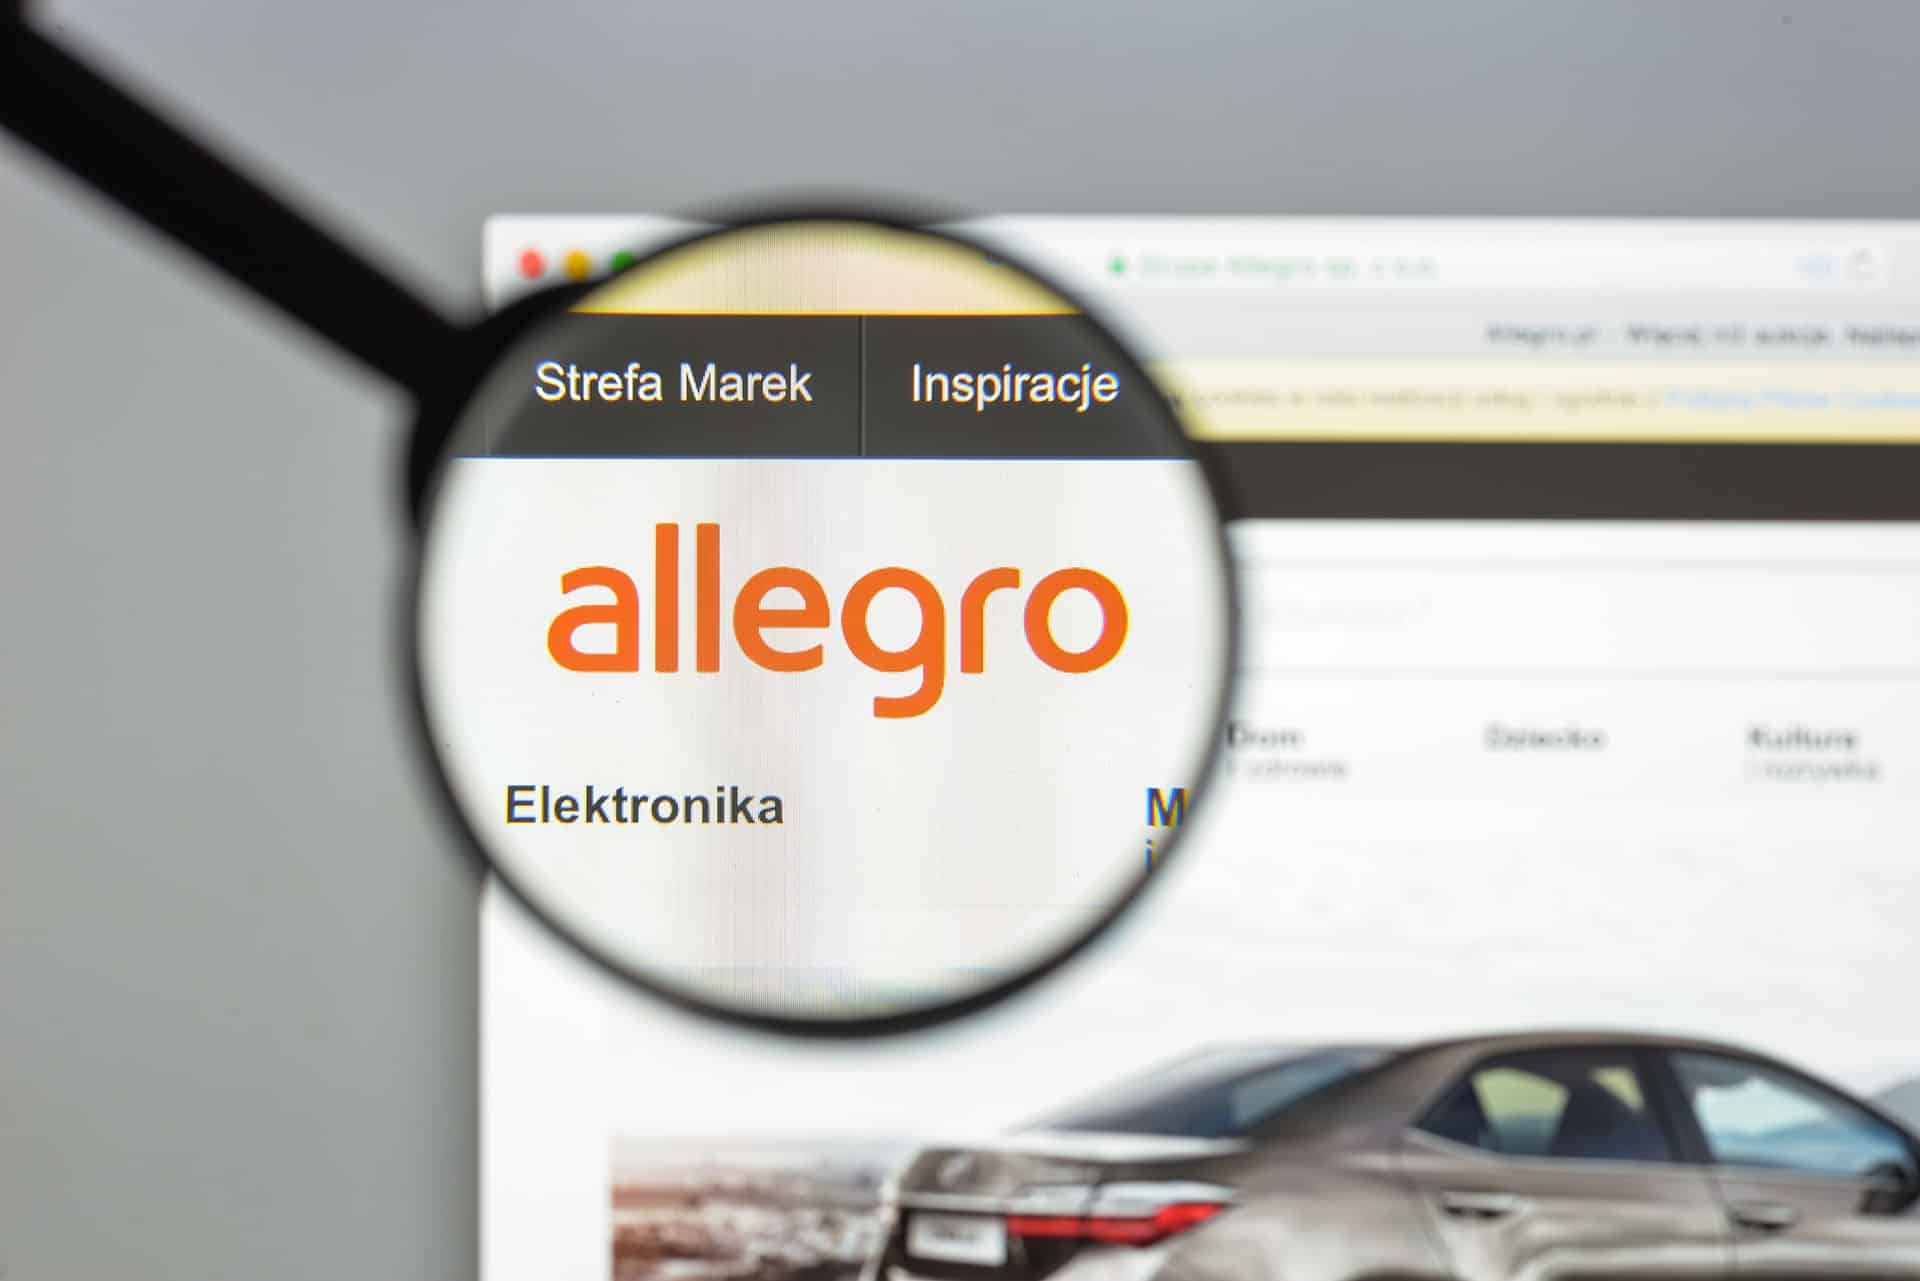 Безопасность и доверие покупателей: Как защитить себя и своих клиентов от мошенничества, следовать политикам Allegro и создать надежный бренд.